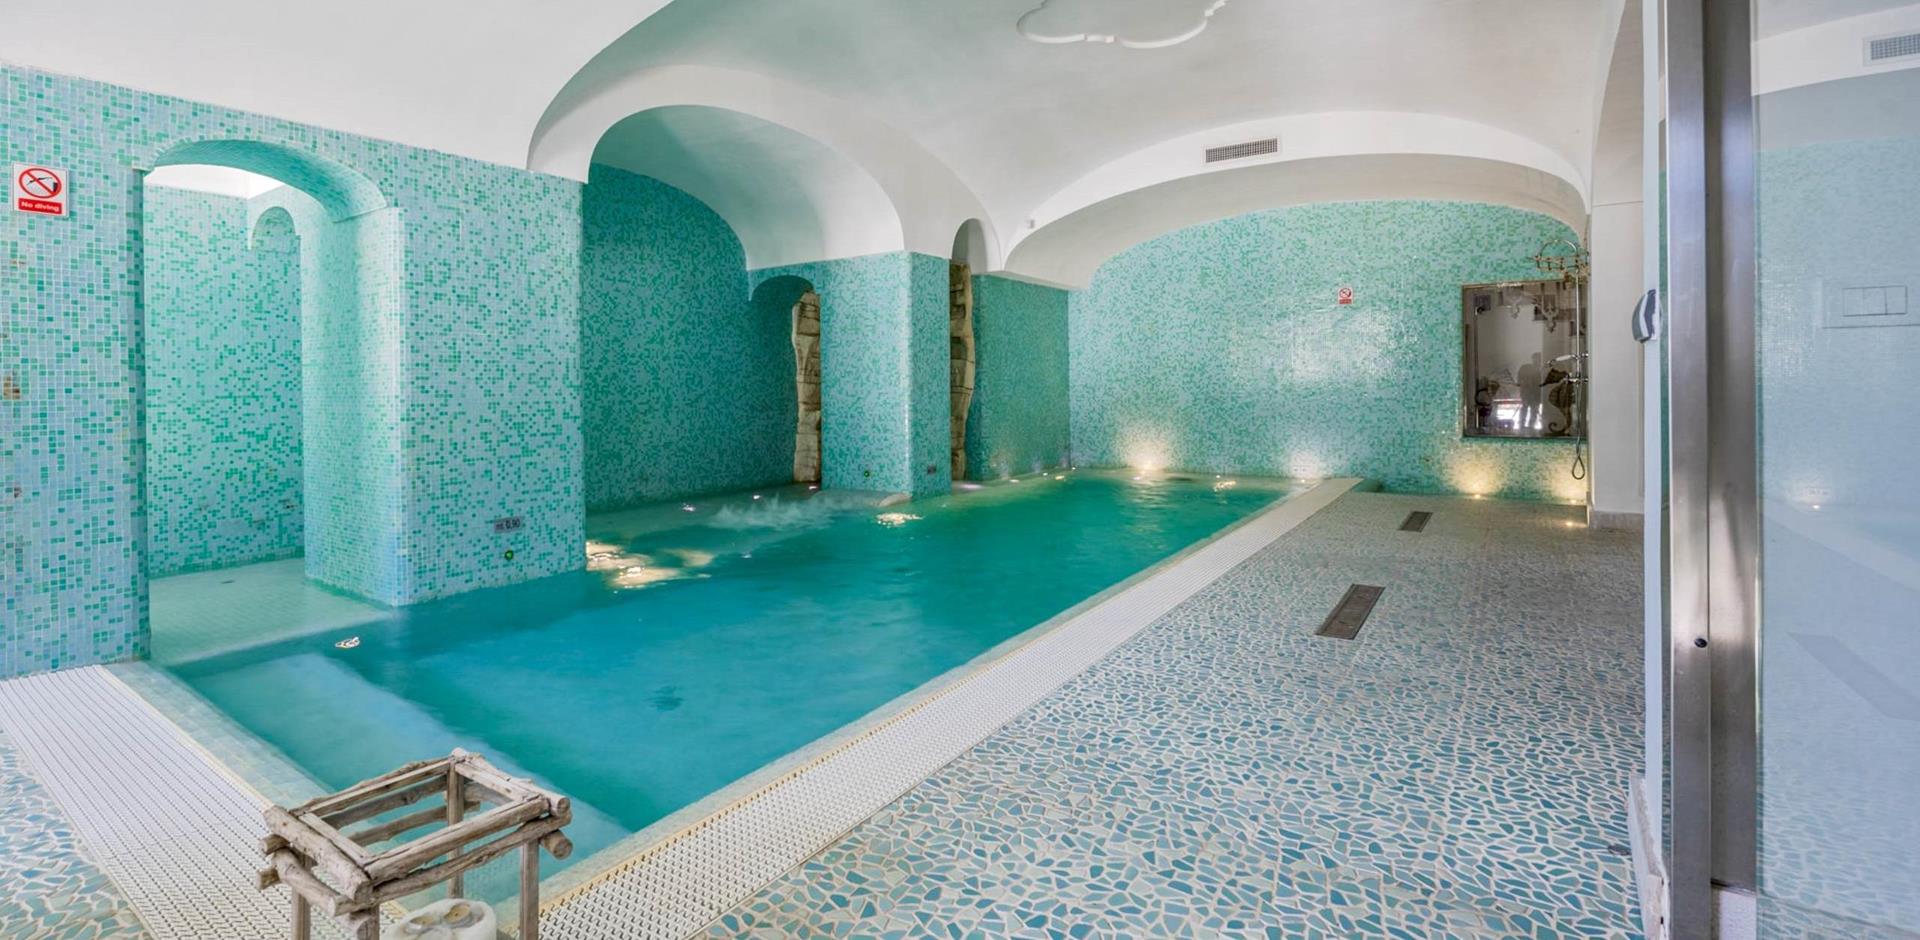 Indoor pool, La Perla, Positano, Italy